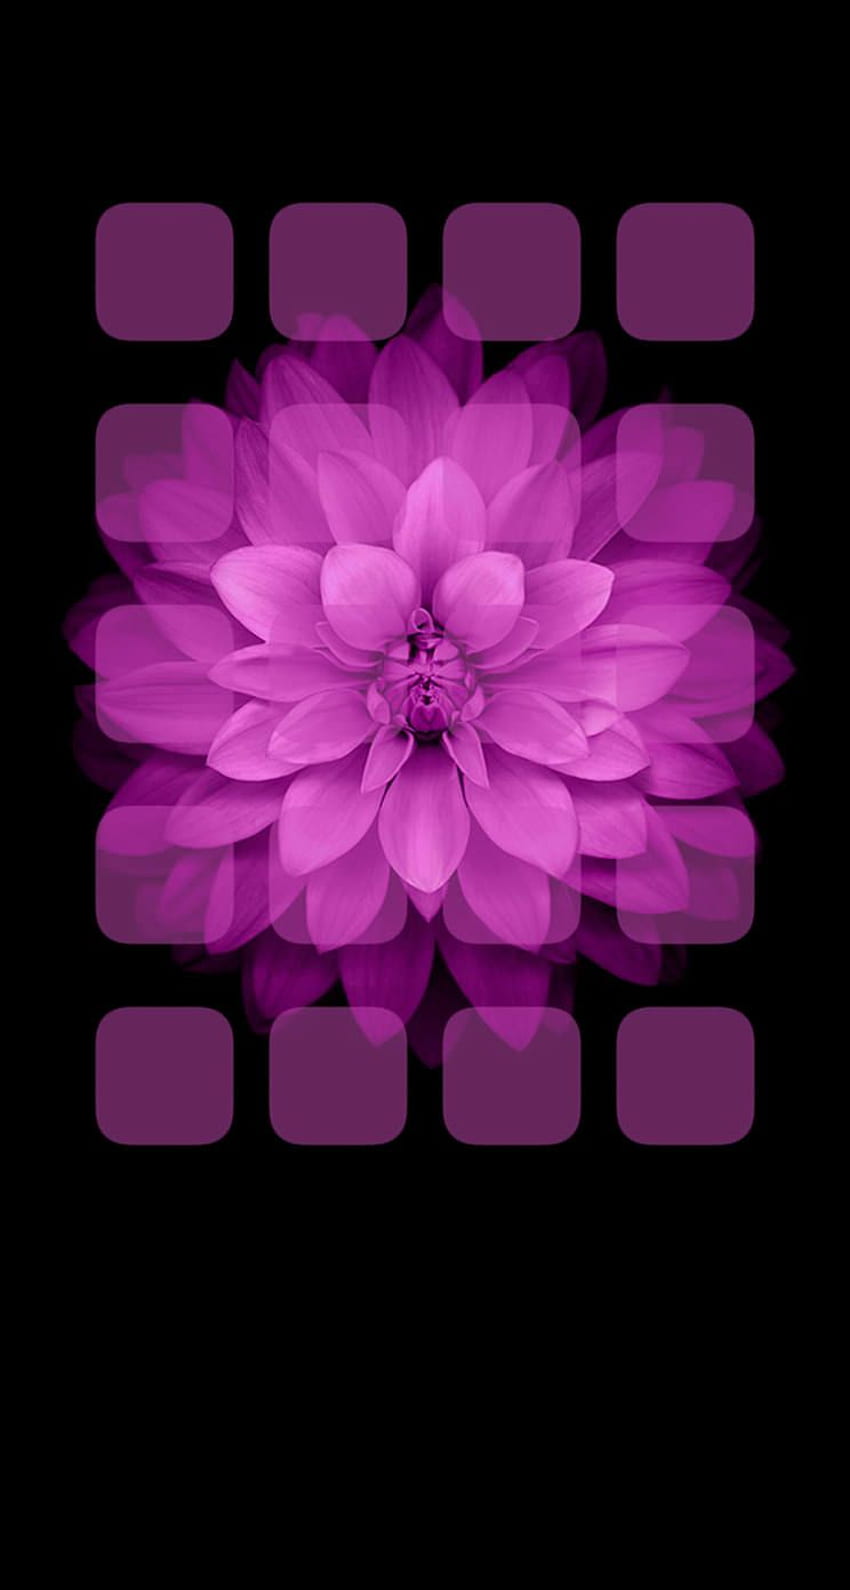 棚紫の黒い花。 .sc iPhone5s、SE HD電話の壁紙